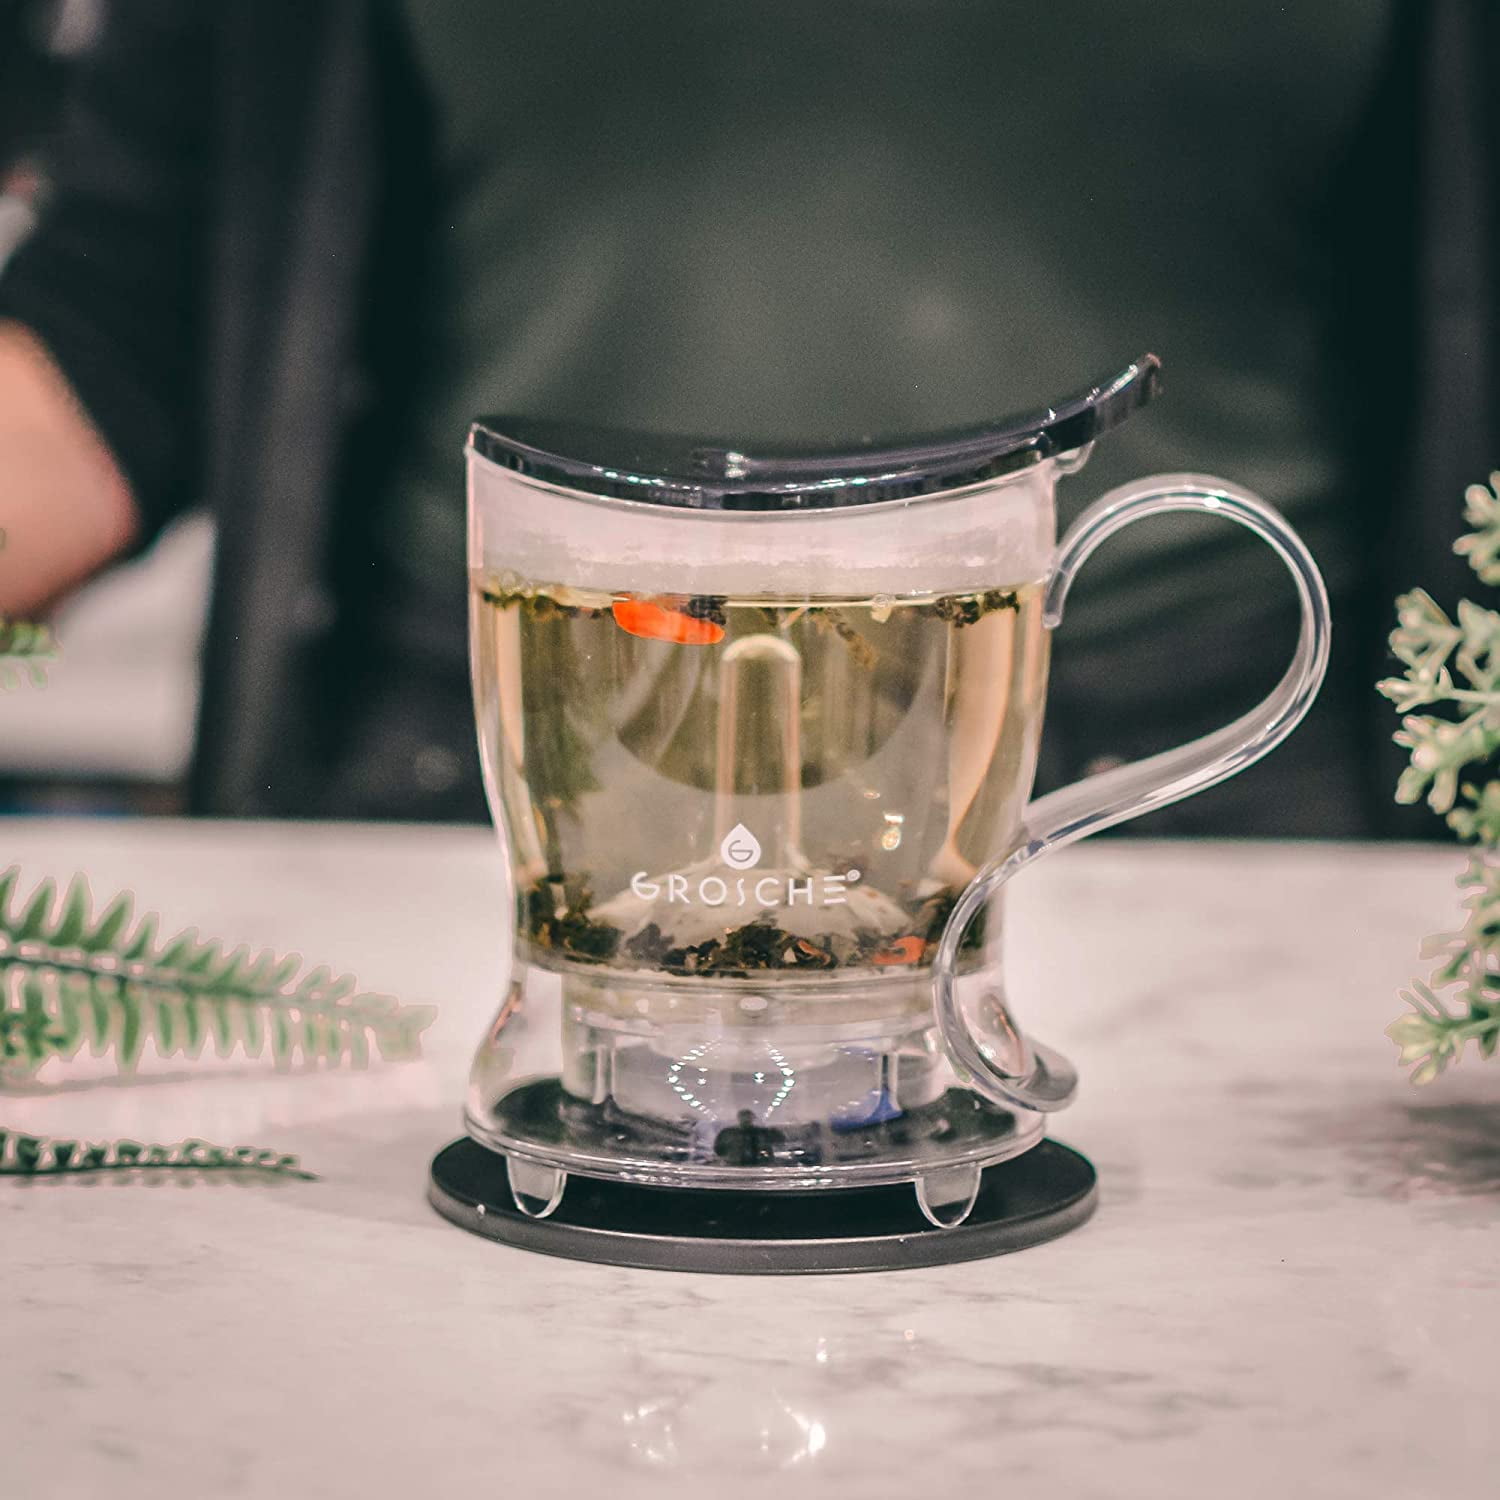 GROSCHE Aberdeen PERFECT TEA MAKER Tea pot with coaster, Tea